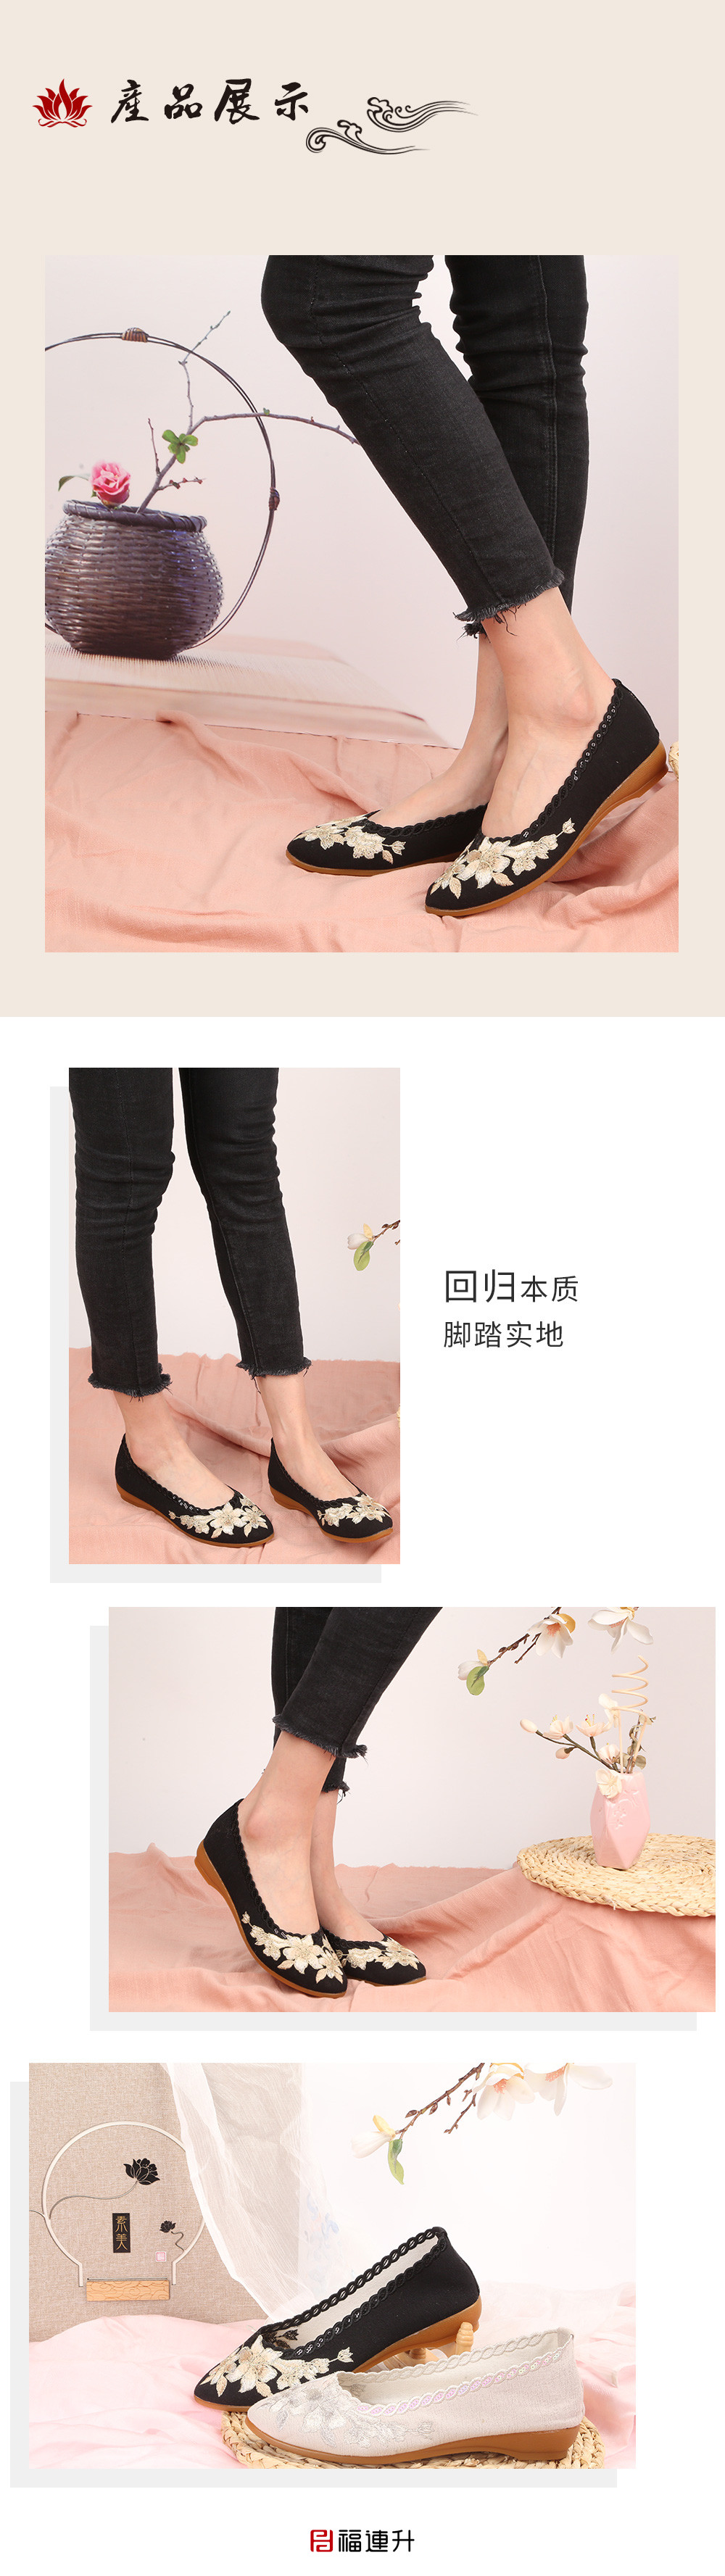 福连升夏款女士刺绣坡跟亚麻透气浅口老北京布鞋(图6)